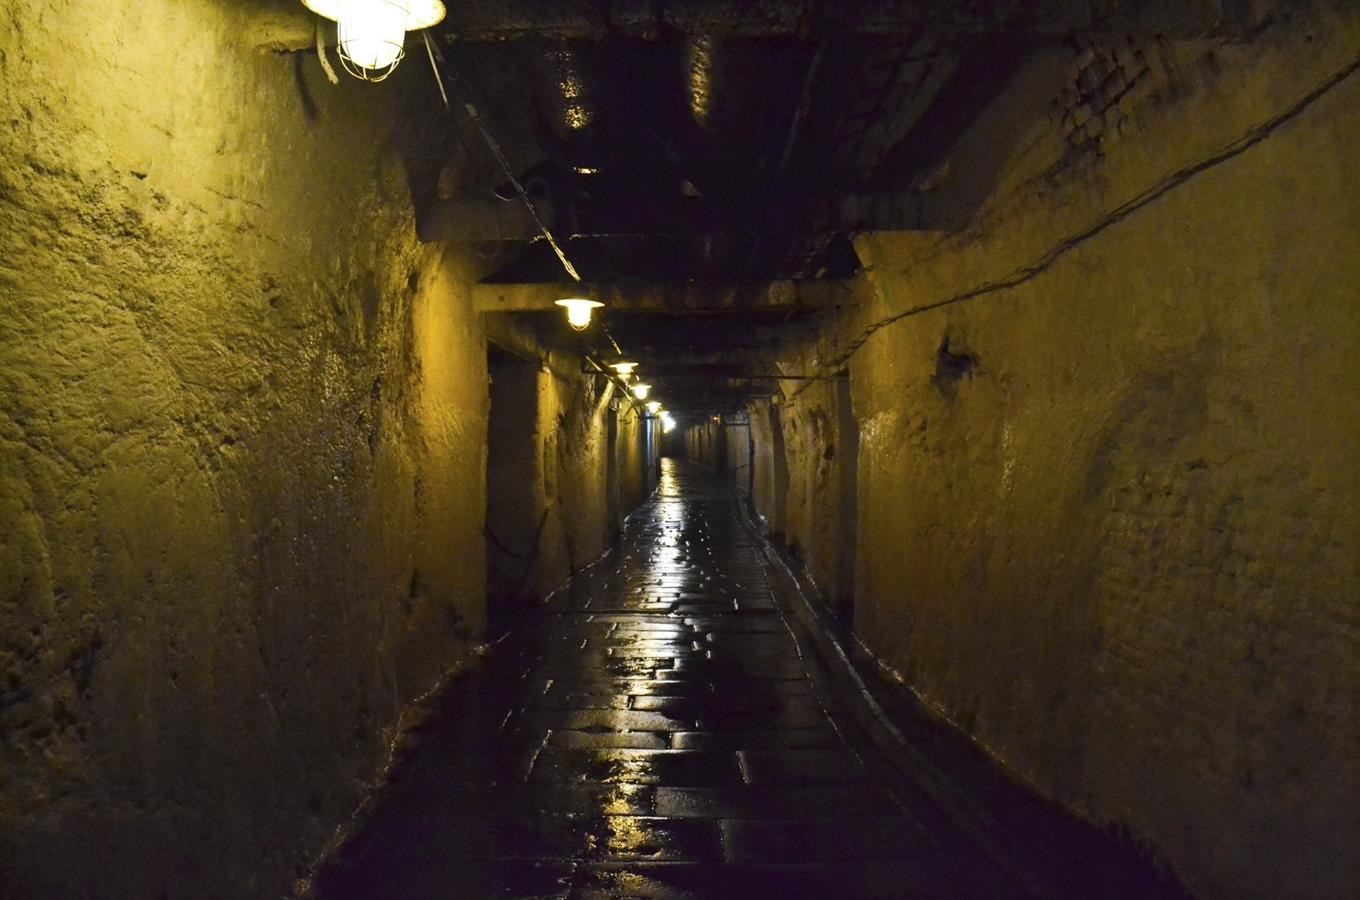 Plzeňské historické podzemí - poznejte život pod městem 